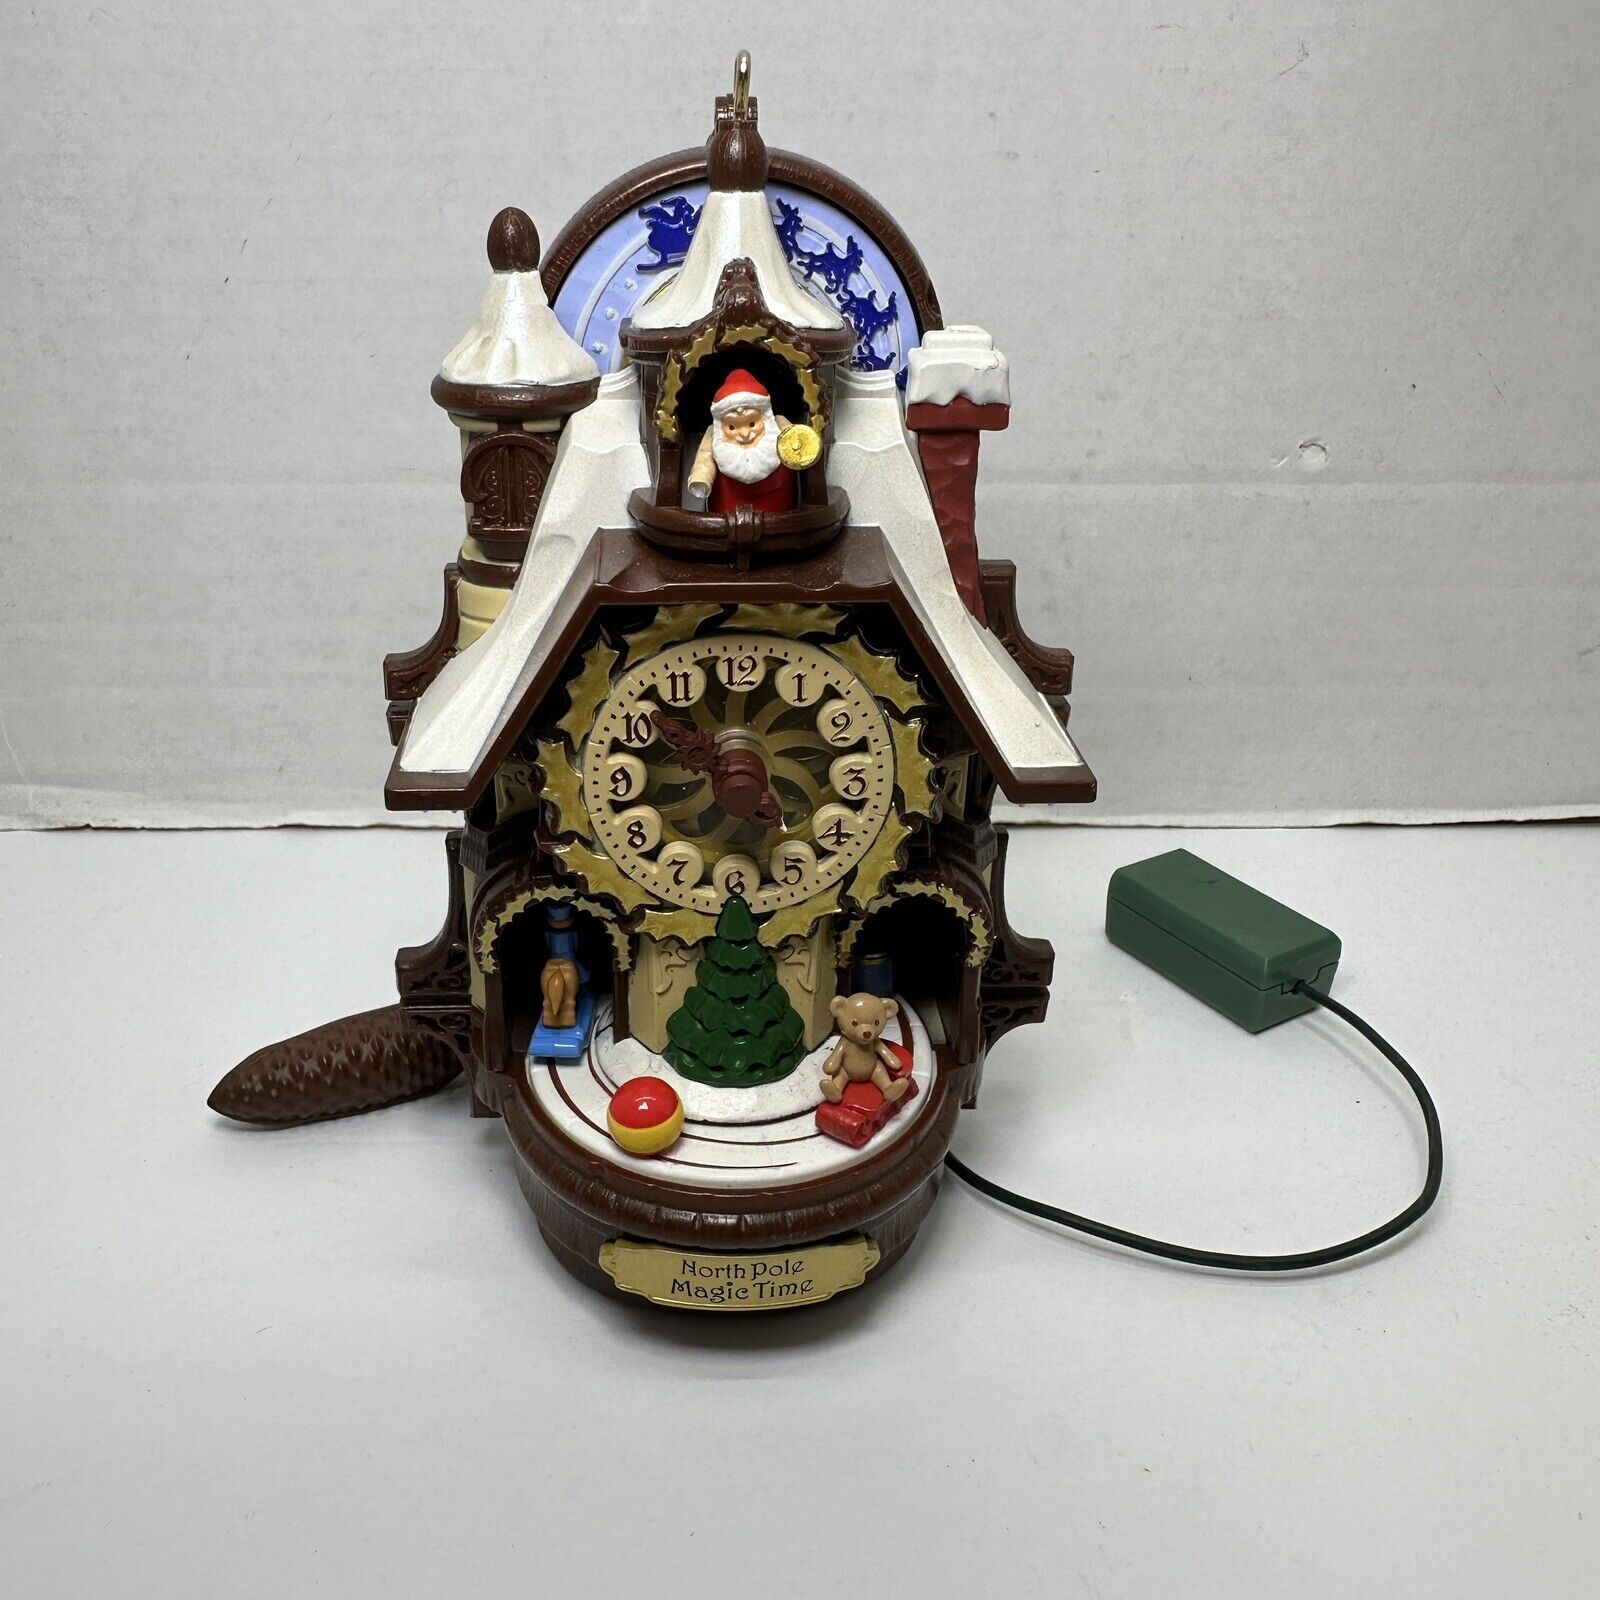 Hallmark Santa's Magic Cuckoo Clock 2013 Ornament Requires Magic Cord READ